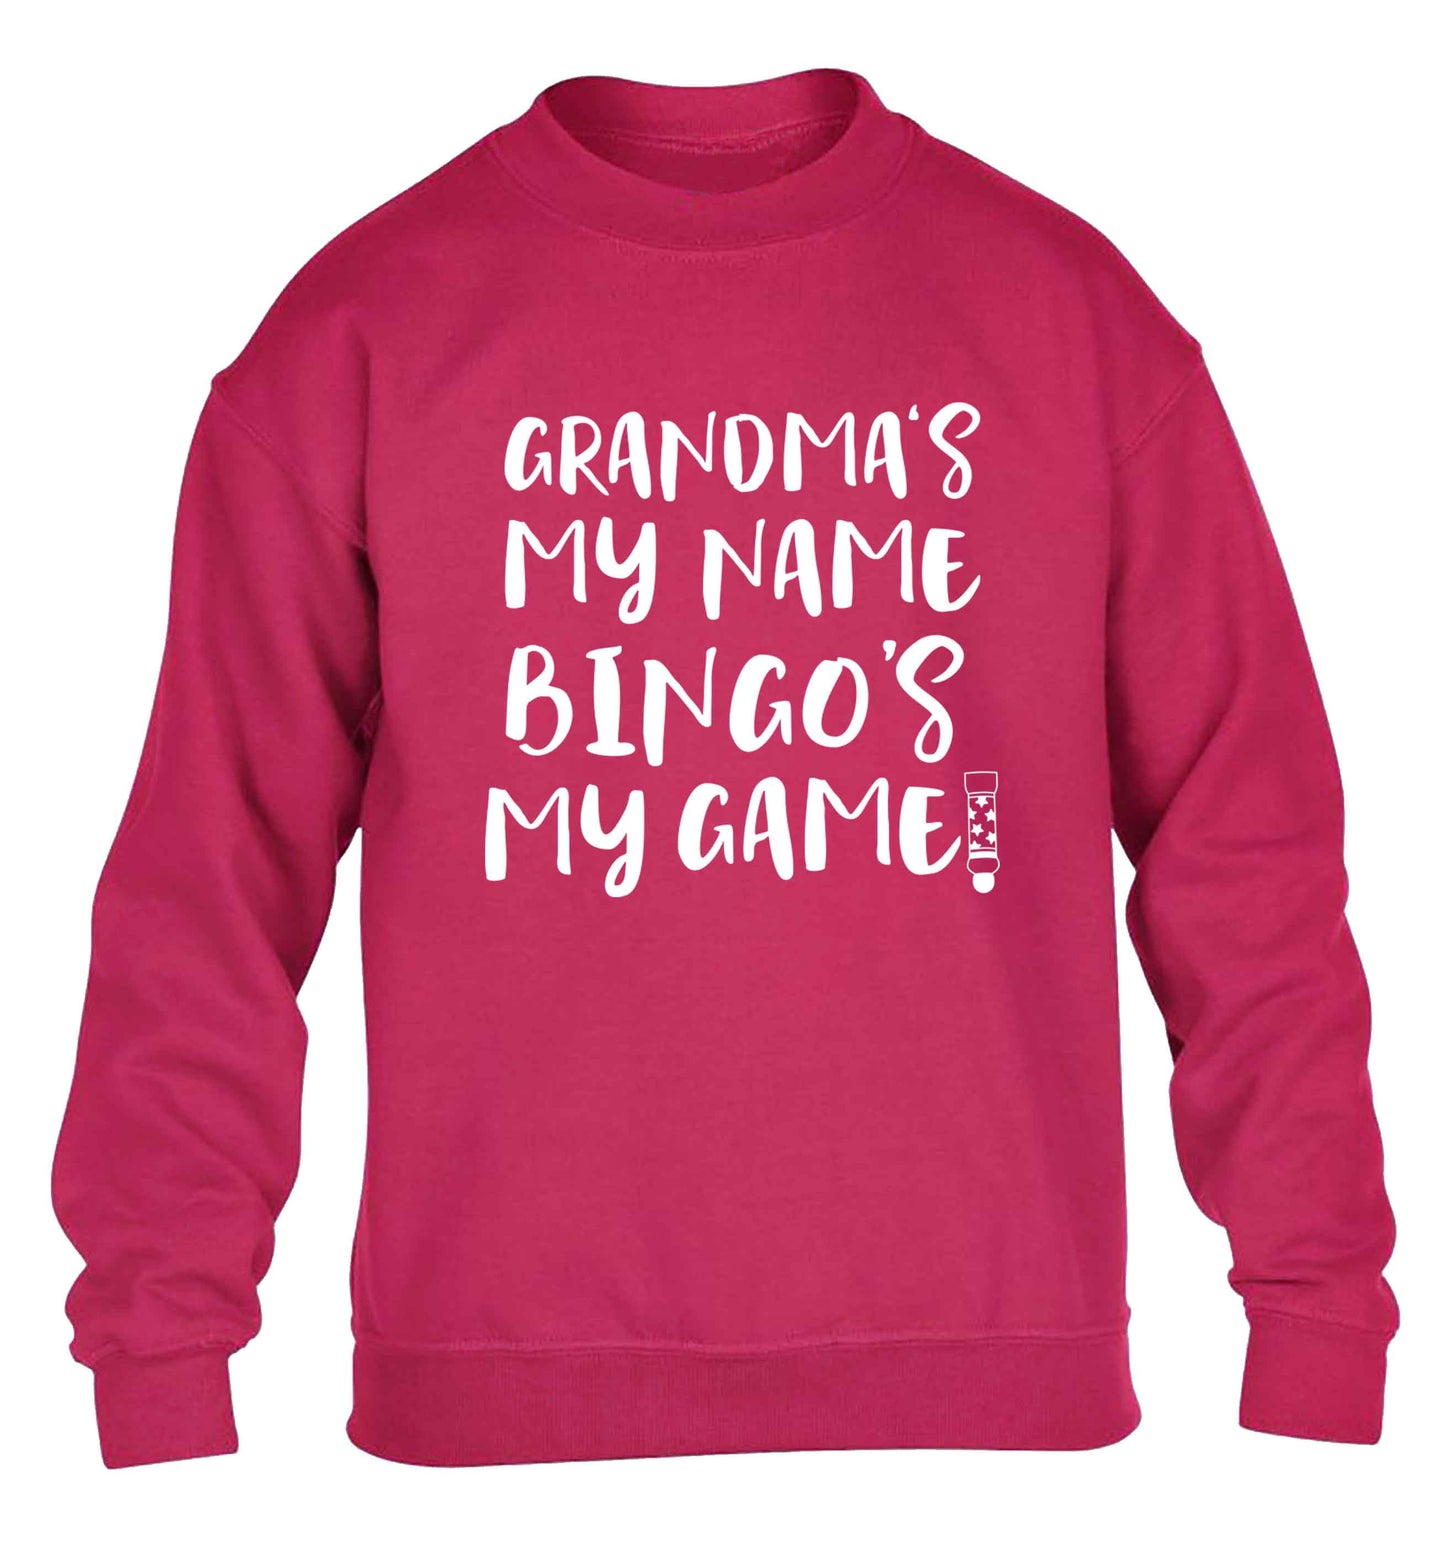 Grandma's my name bingo's my game! children's pink sweater 12-13 Years